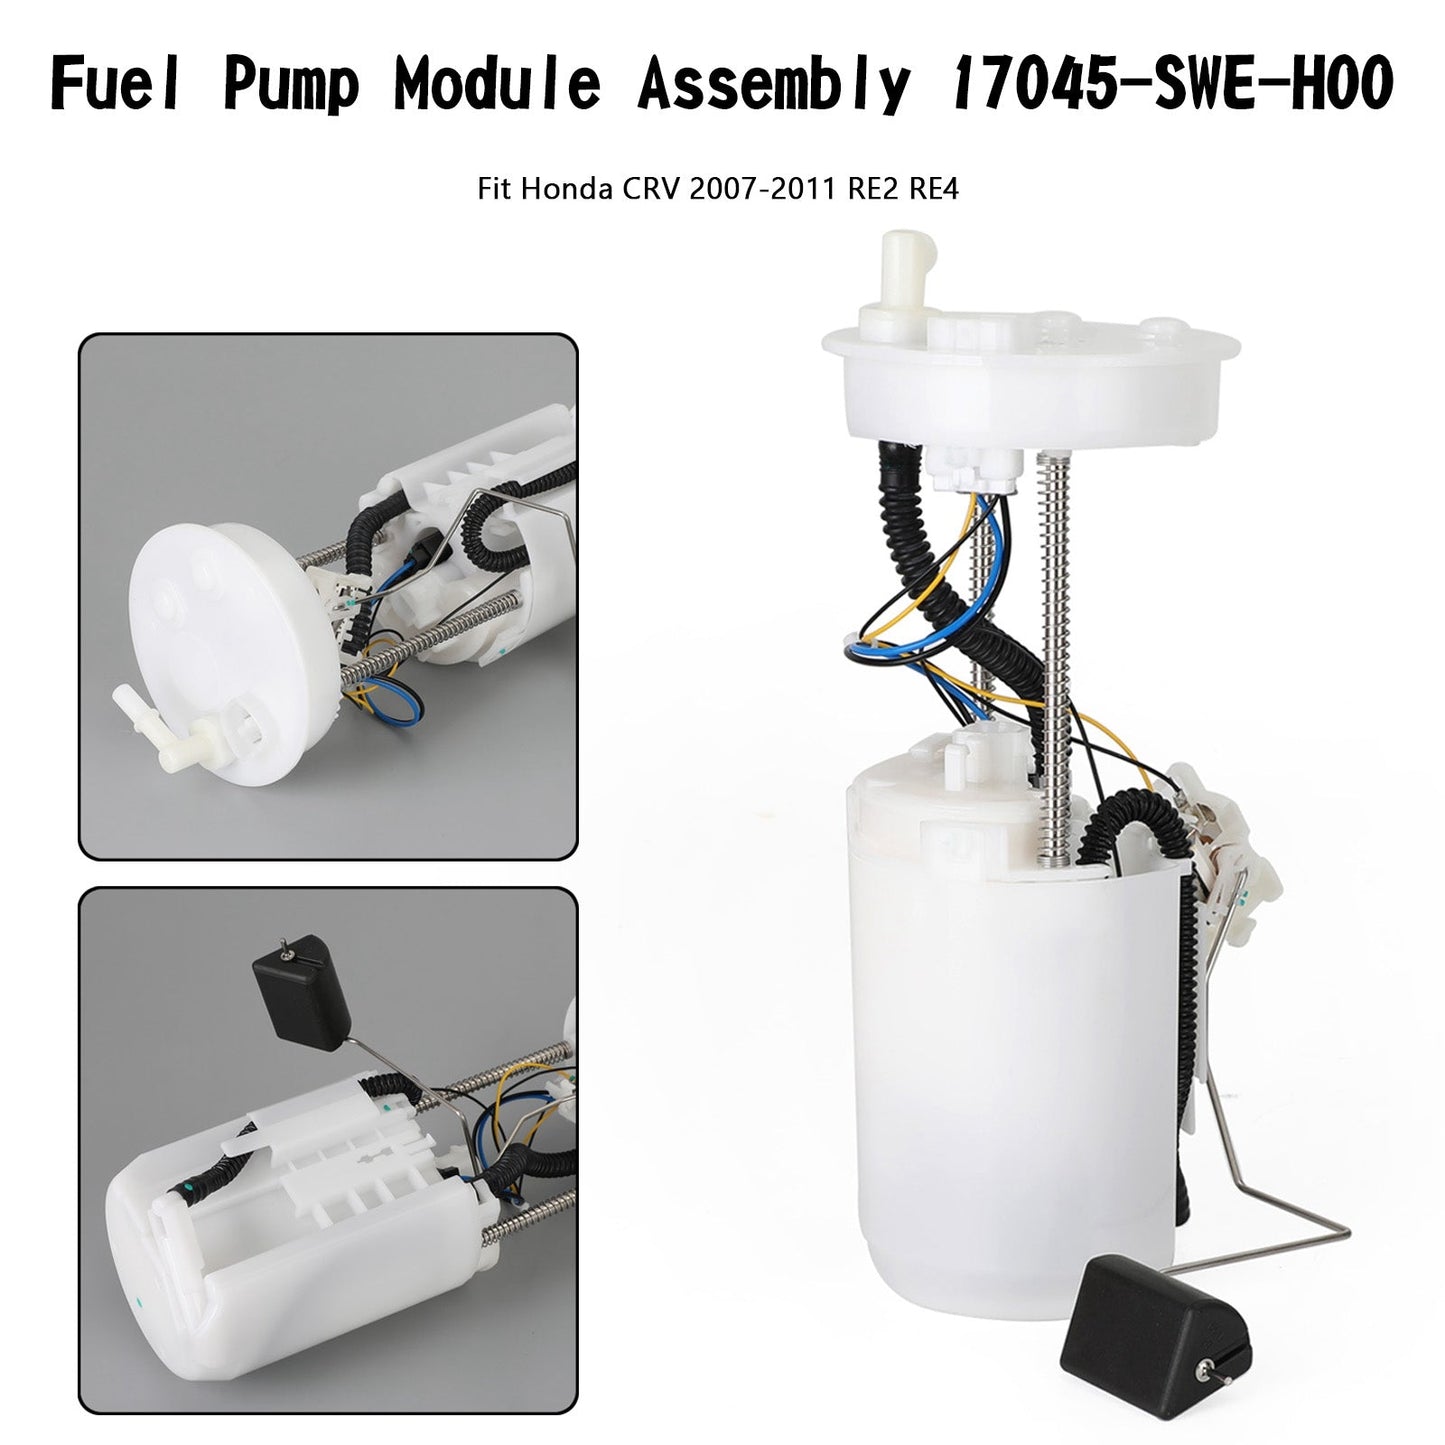 Ensemble de module de pompe à carburant 17045-SWE-H00 pour Honda CRV RE2 RE4 2007-2011 générique